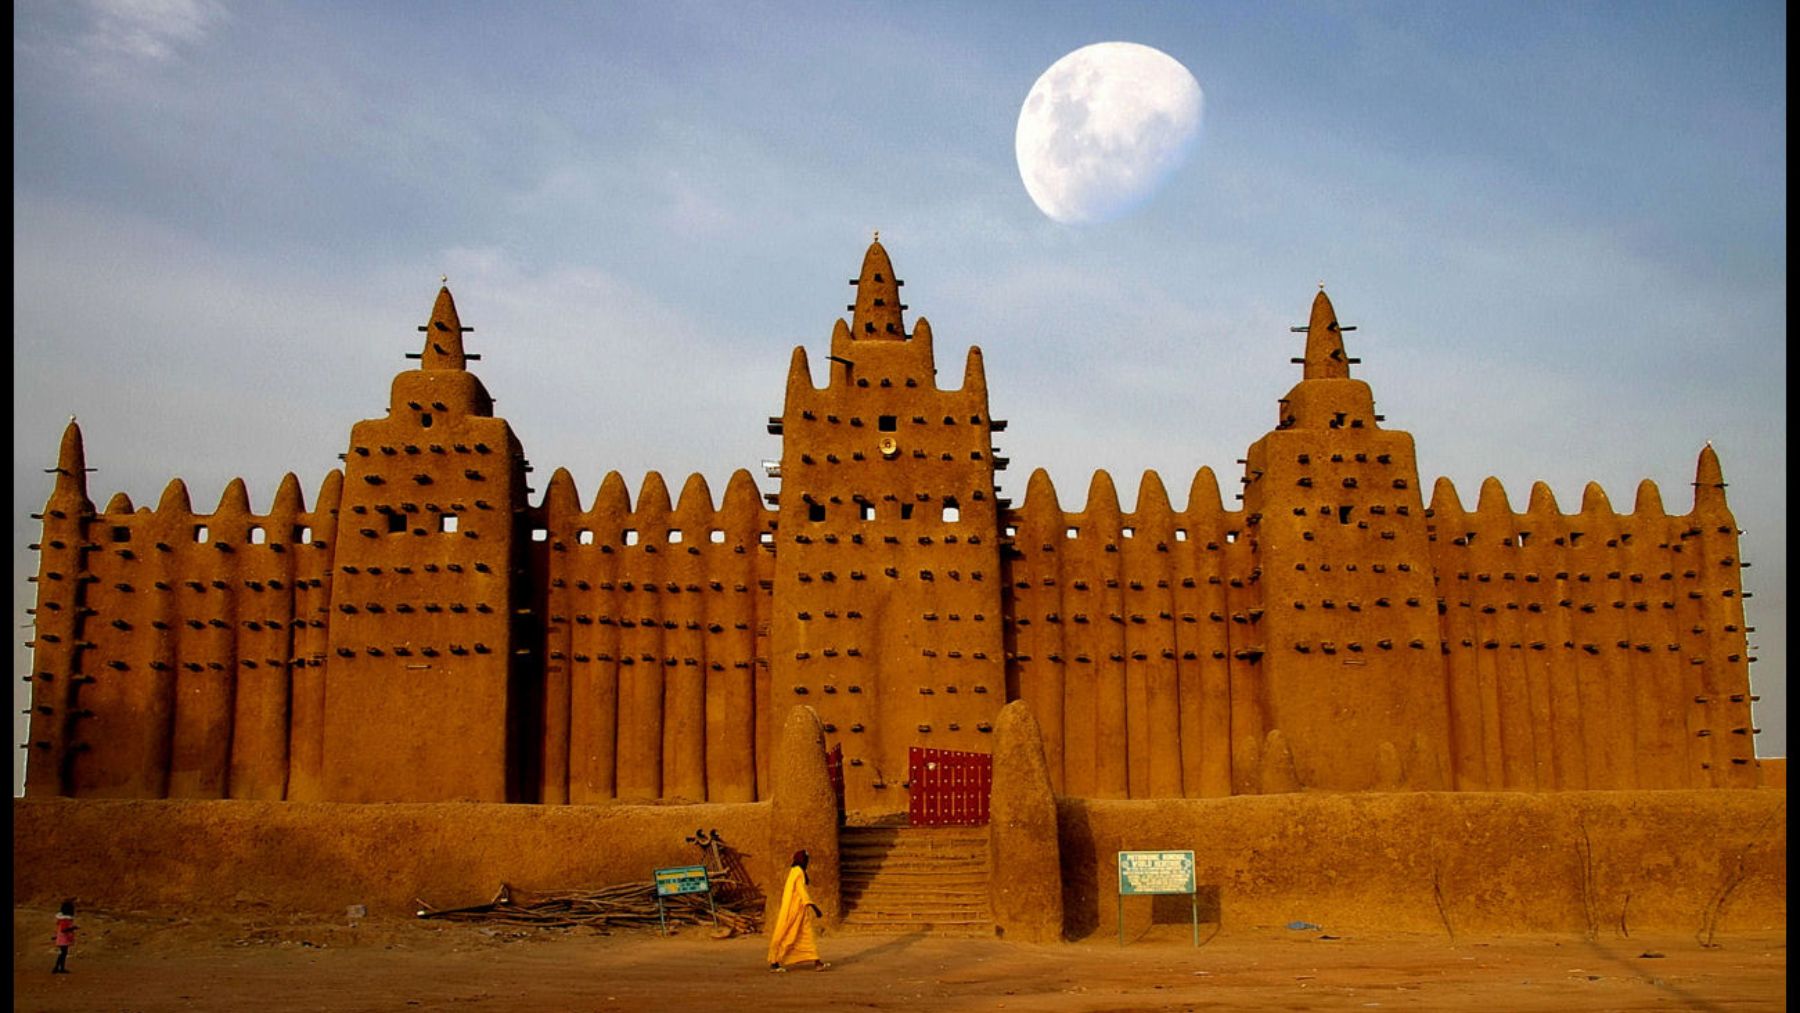 Descubre los edificios sagrados más imponentes como la gran mezquita de djenné